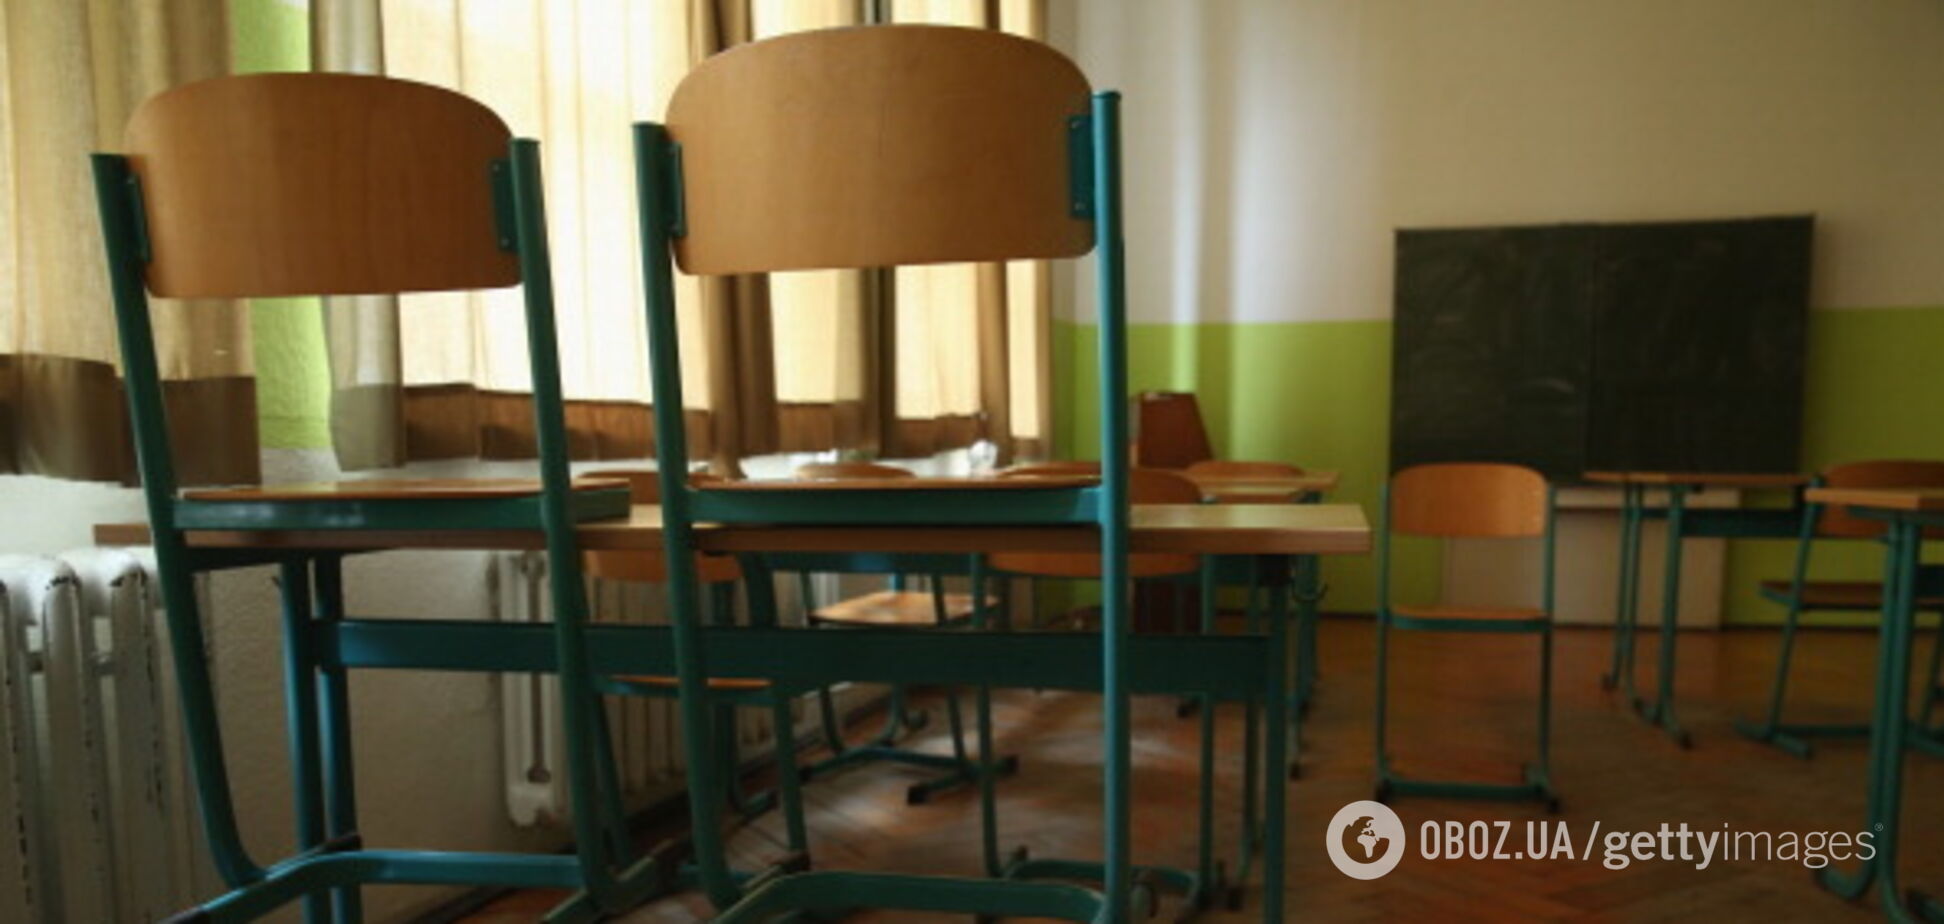 В селе на Львовщине почти 300 детей уже три недели не ходят в школу из-за директора: что случилось